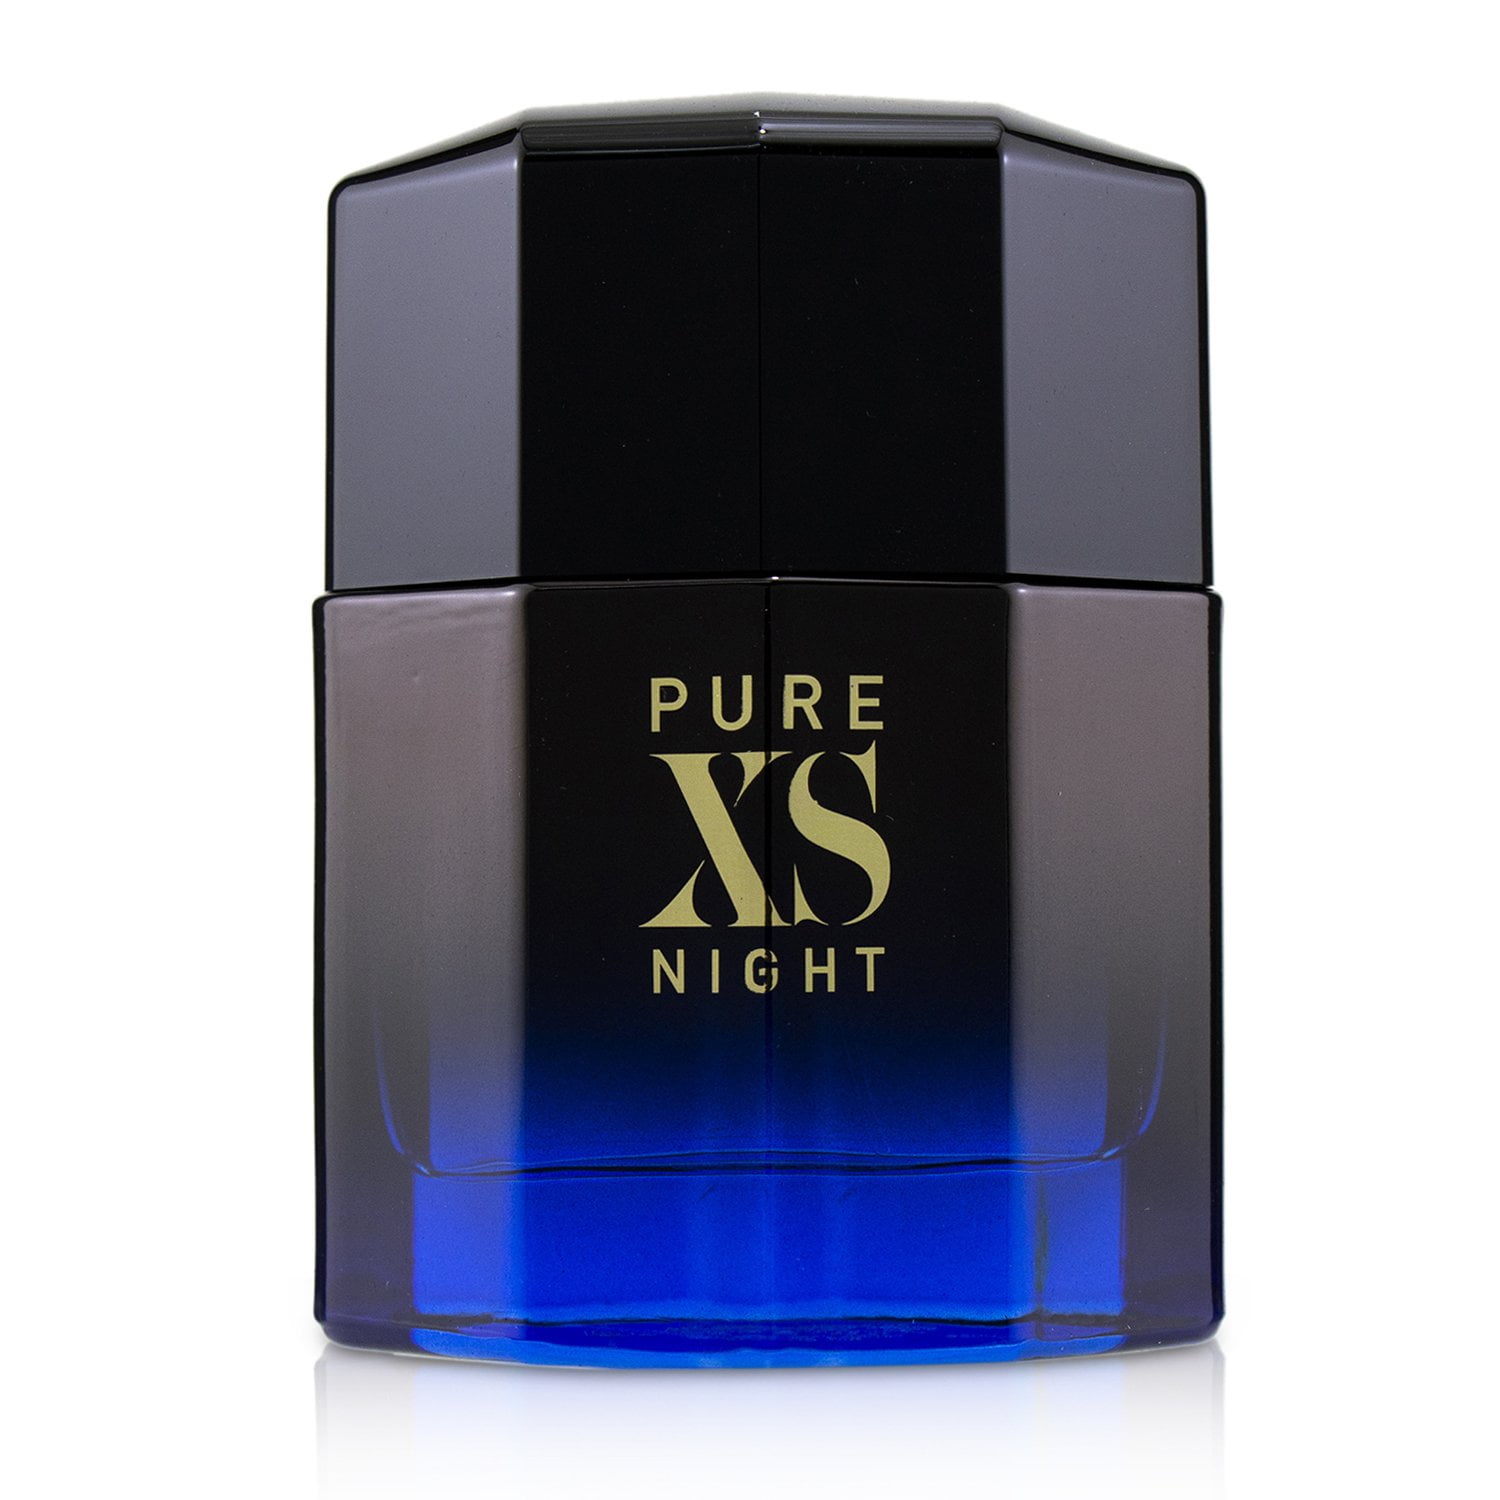 PURE XS NIGHT * Paco Rabanne 3.4 oz / 100 ml Eau de Parfum Men Cologne ...